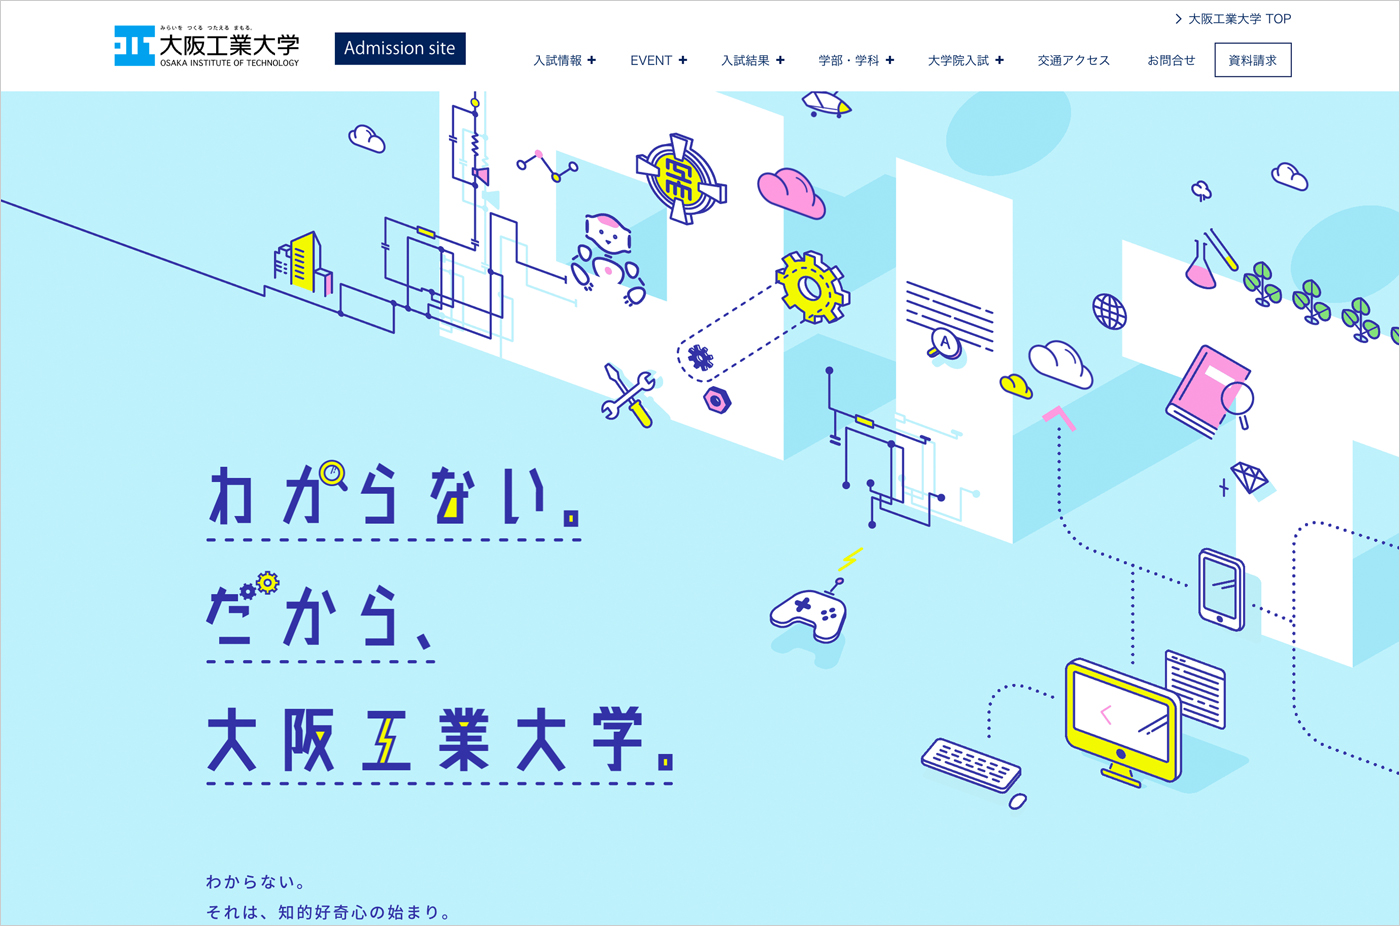 わからない。だから、大阪工業大学。 | 大阪工業大学ウェブサイトの画面キャプチャ画像